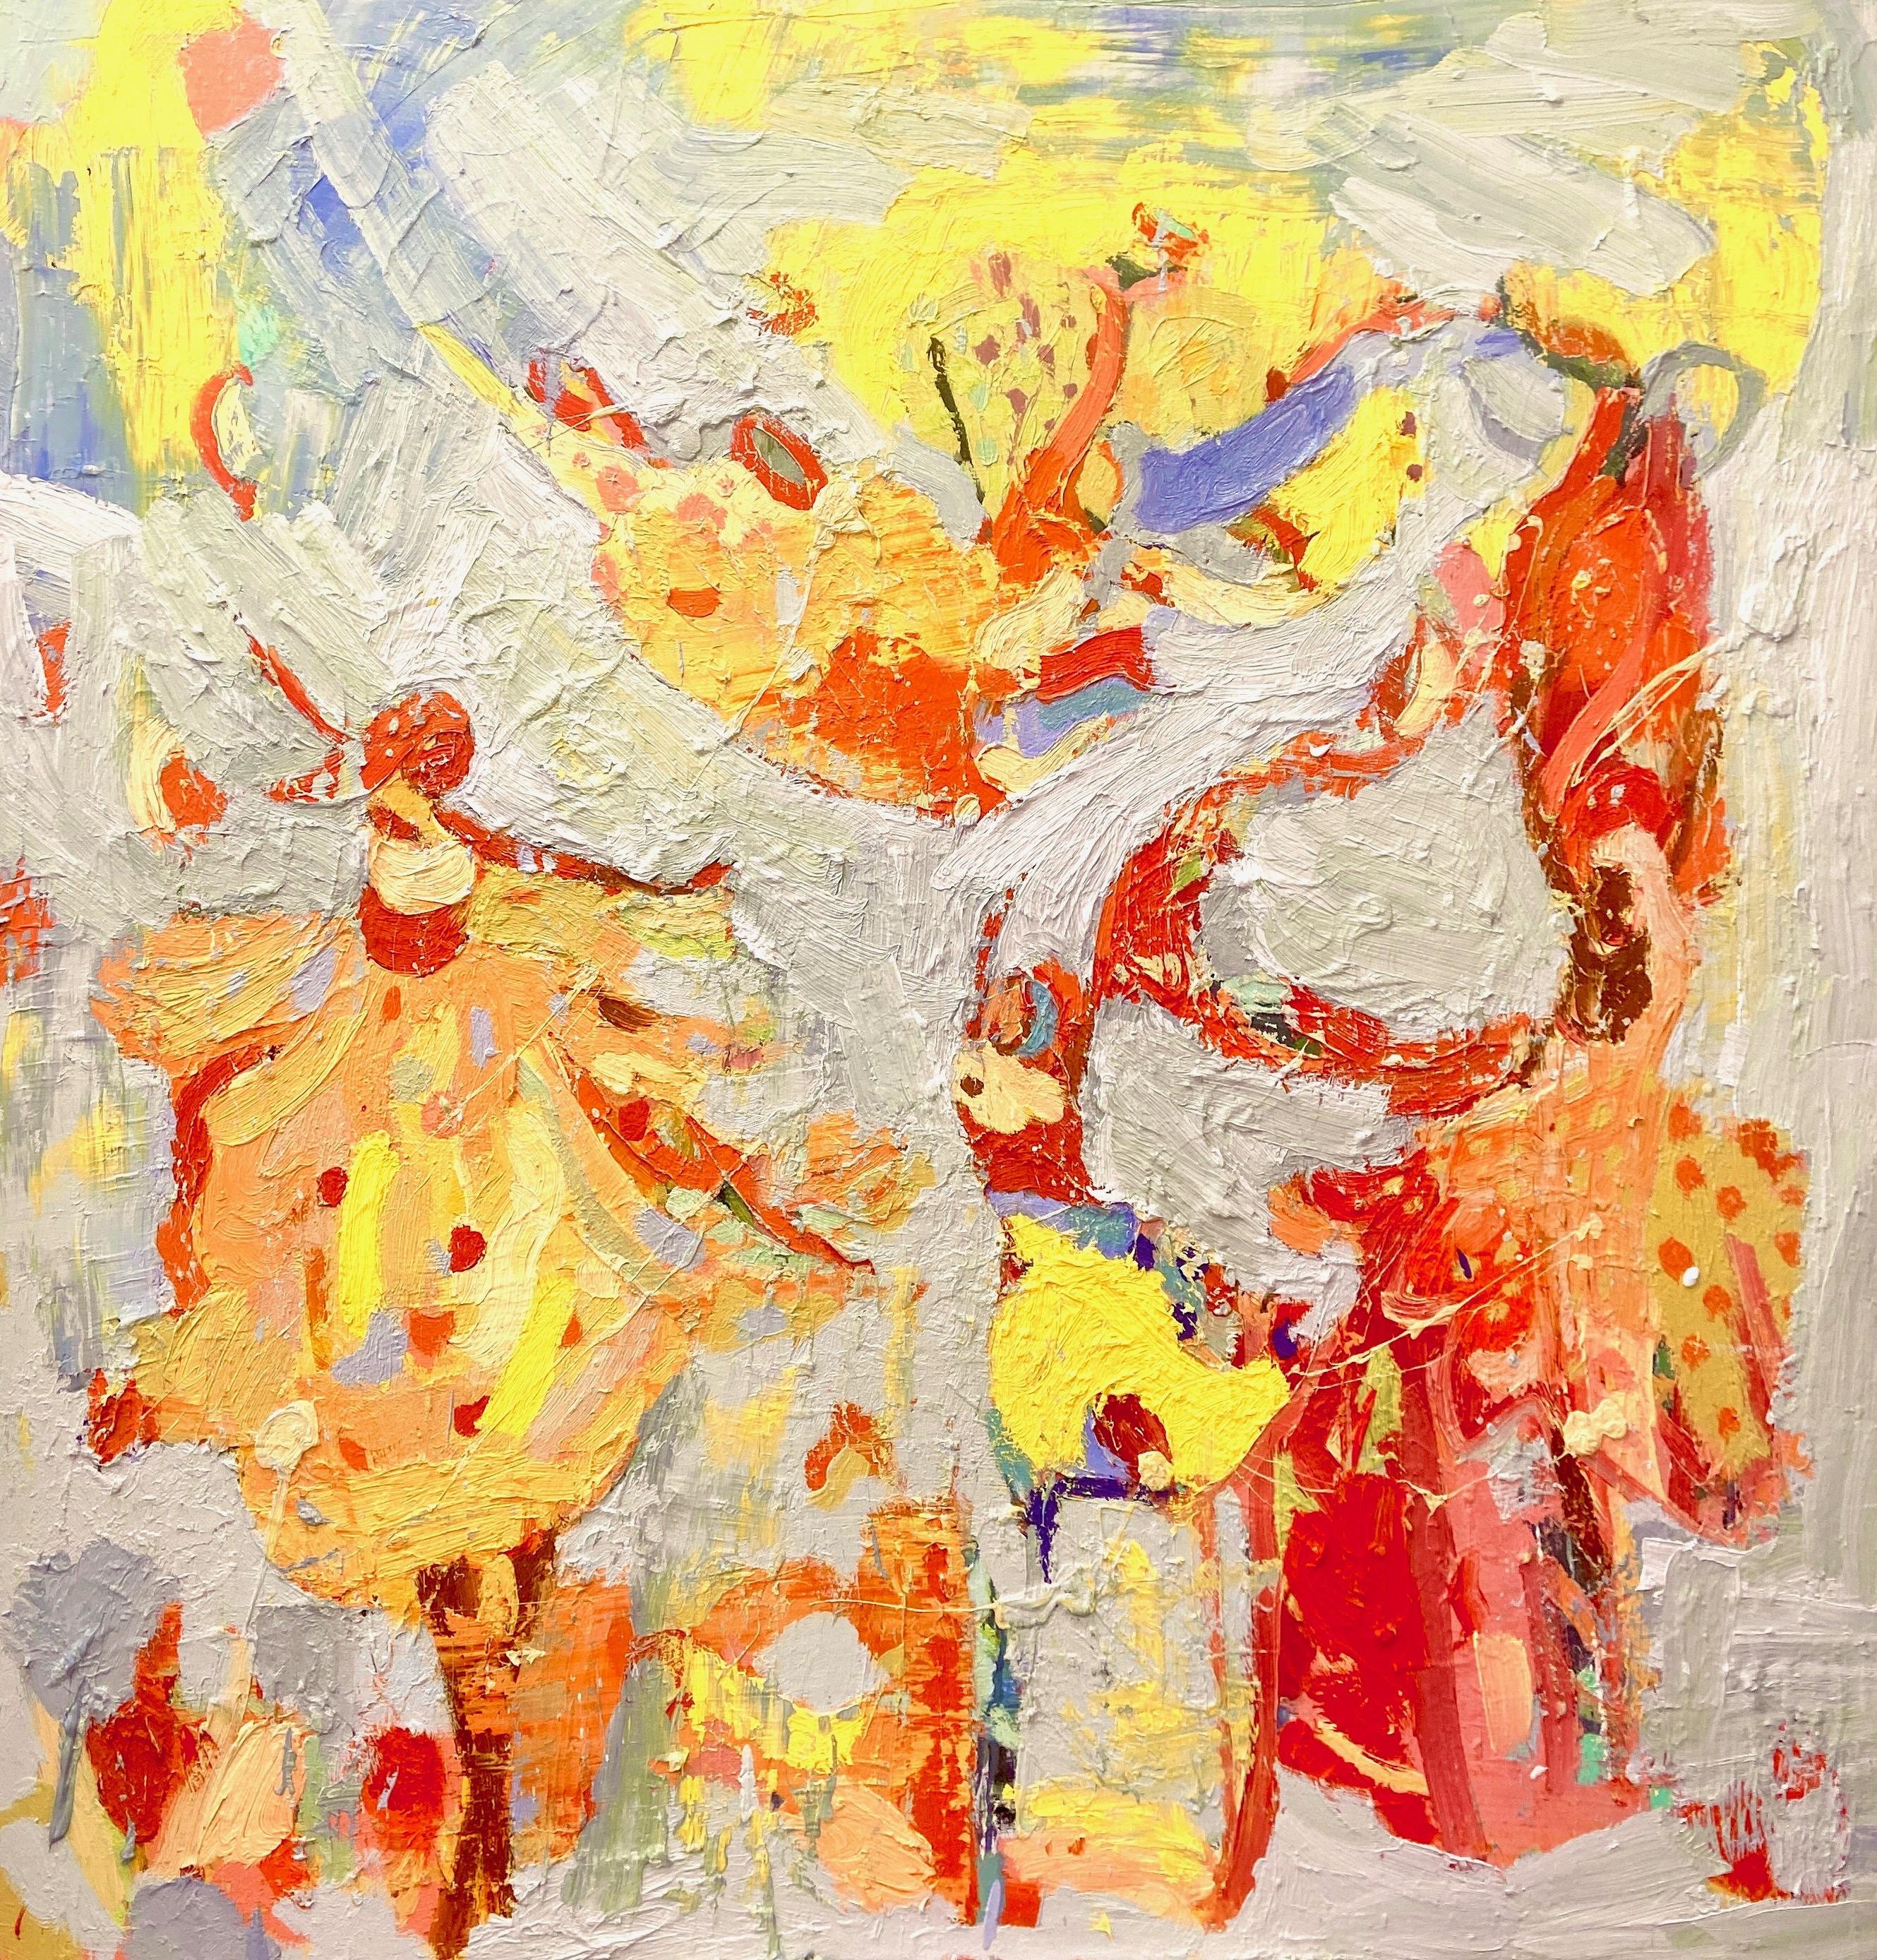 Paul wadsworth Figurative Painting – Gypsy-Tänzer aus Rajasthan. Großes abstrakt-expressionistisches Ölgemälde